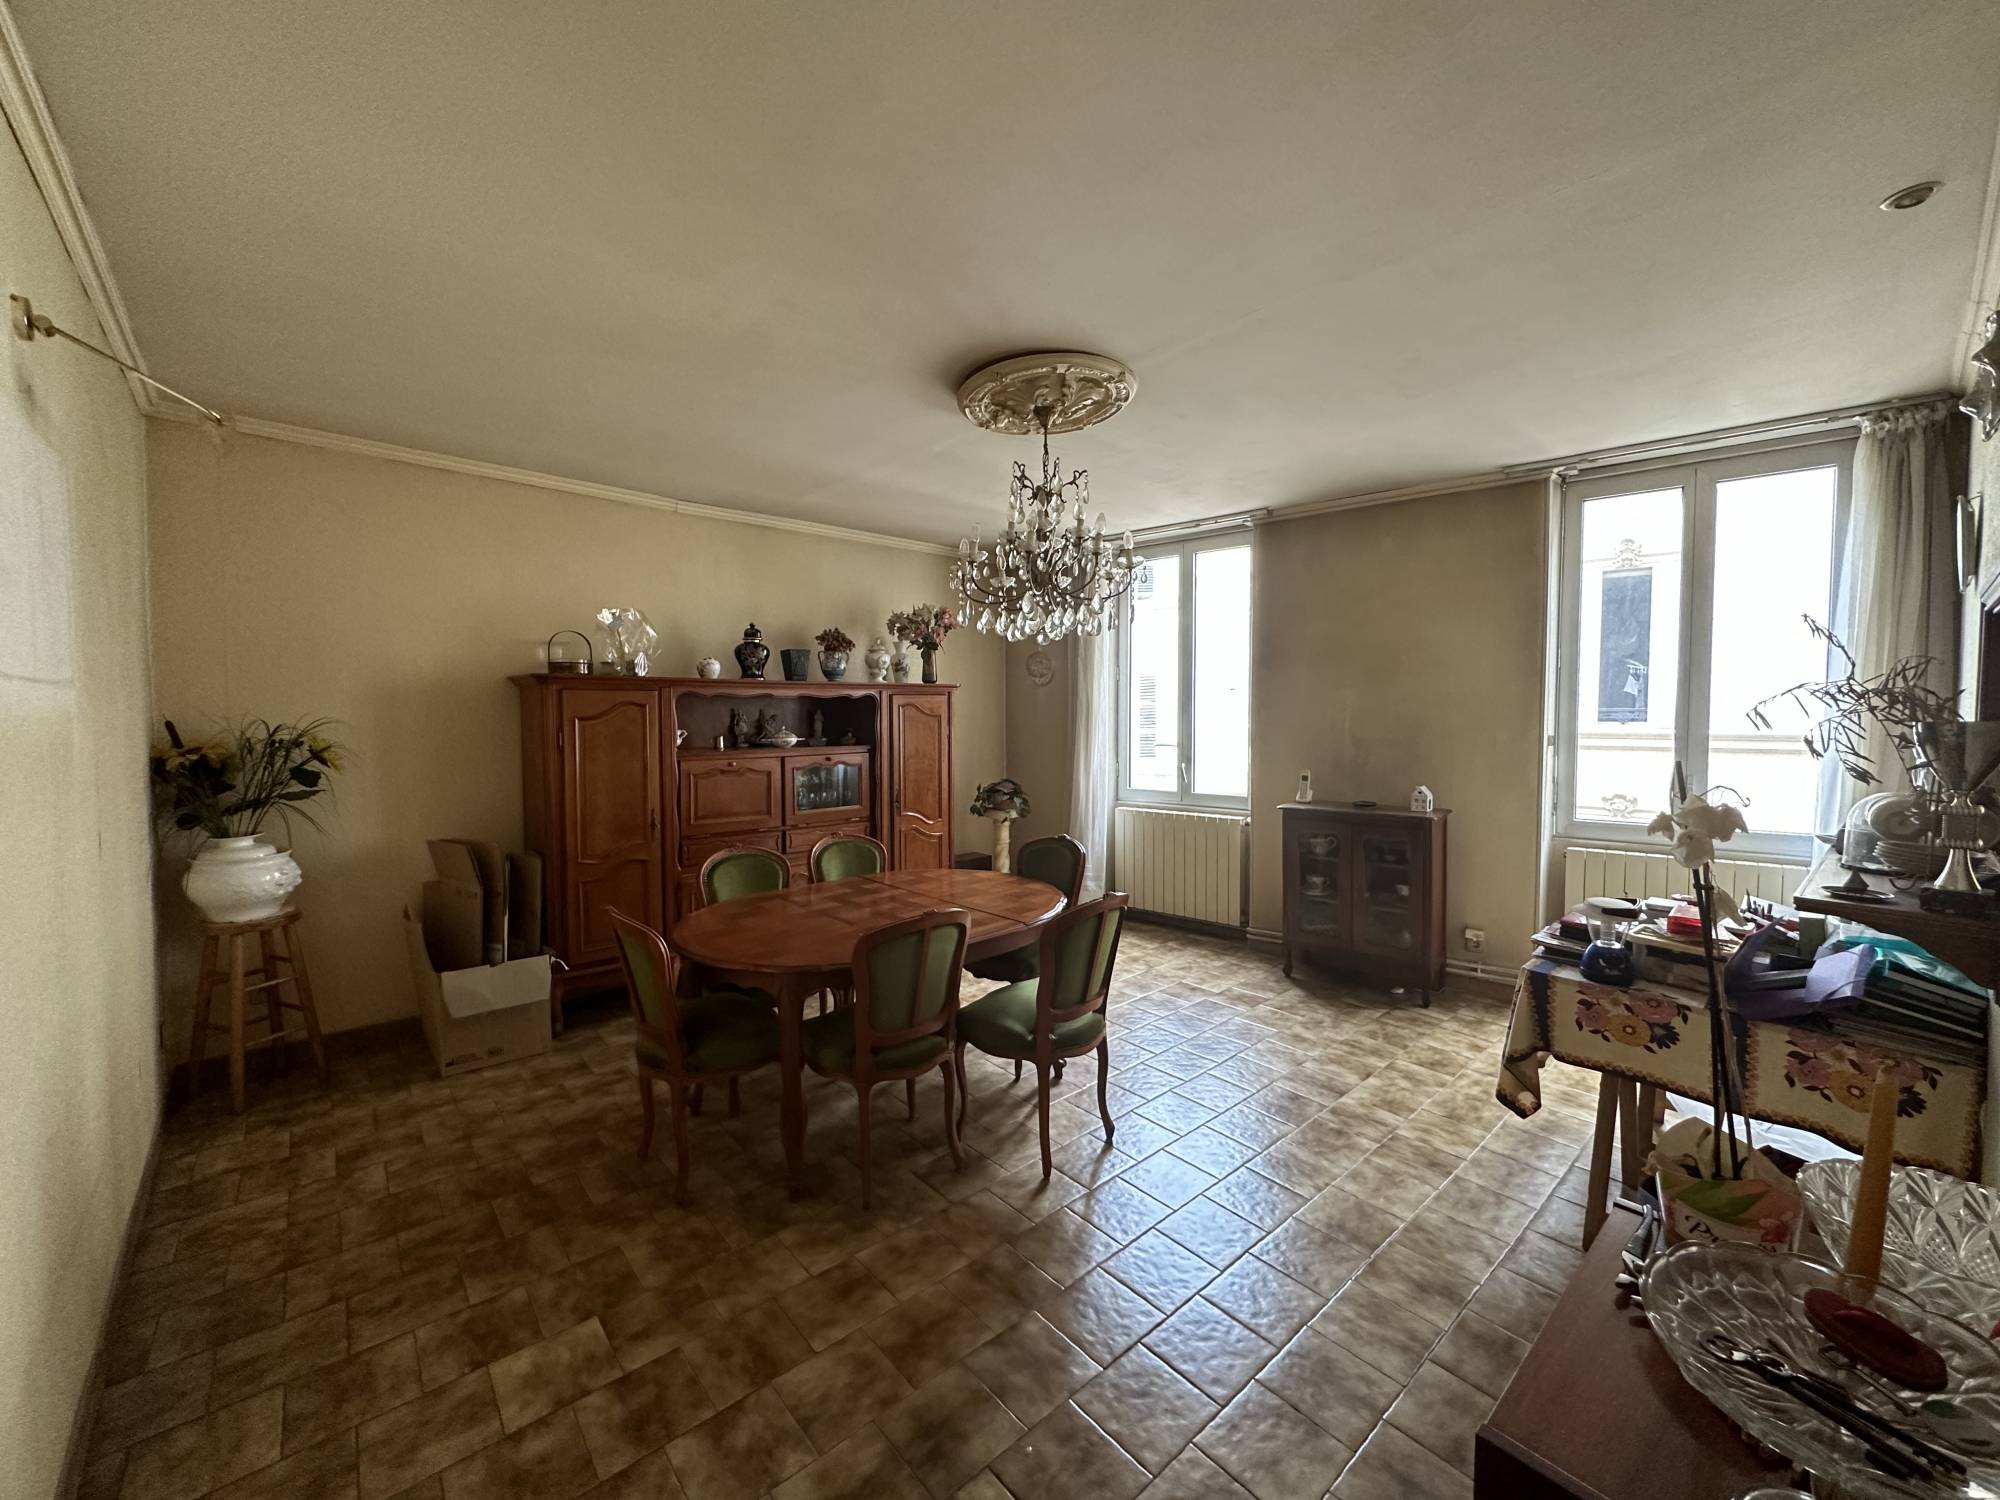 A vendre bel appartement type 5 spacieux et lumineux dans immeuble marseillais Réformés - Libération 13001 Marseille